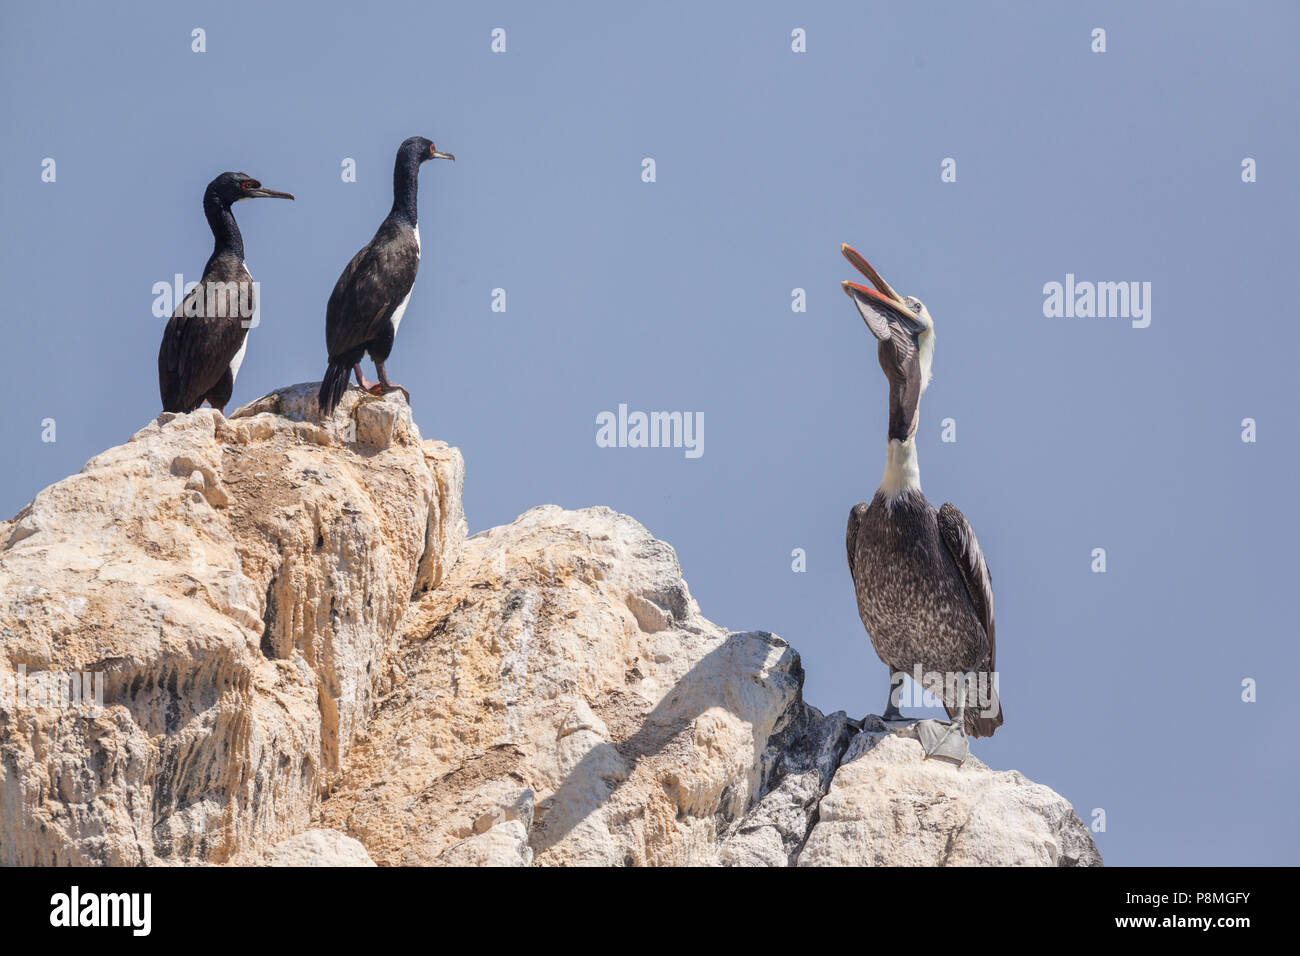 Pelican péruvienne et deux Cormorans Guanay debout sur un rocher Banque D'Images